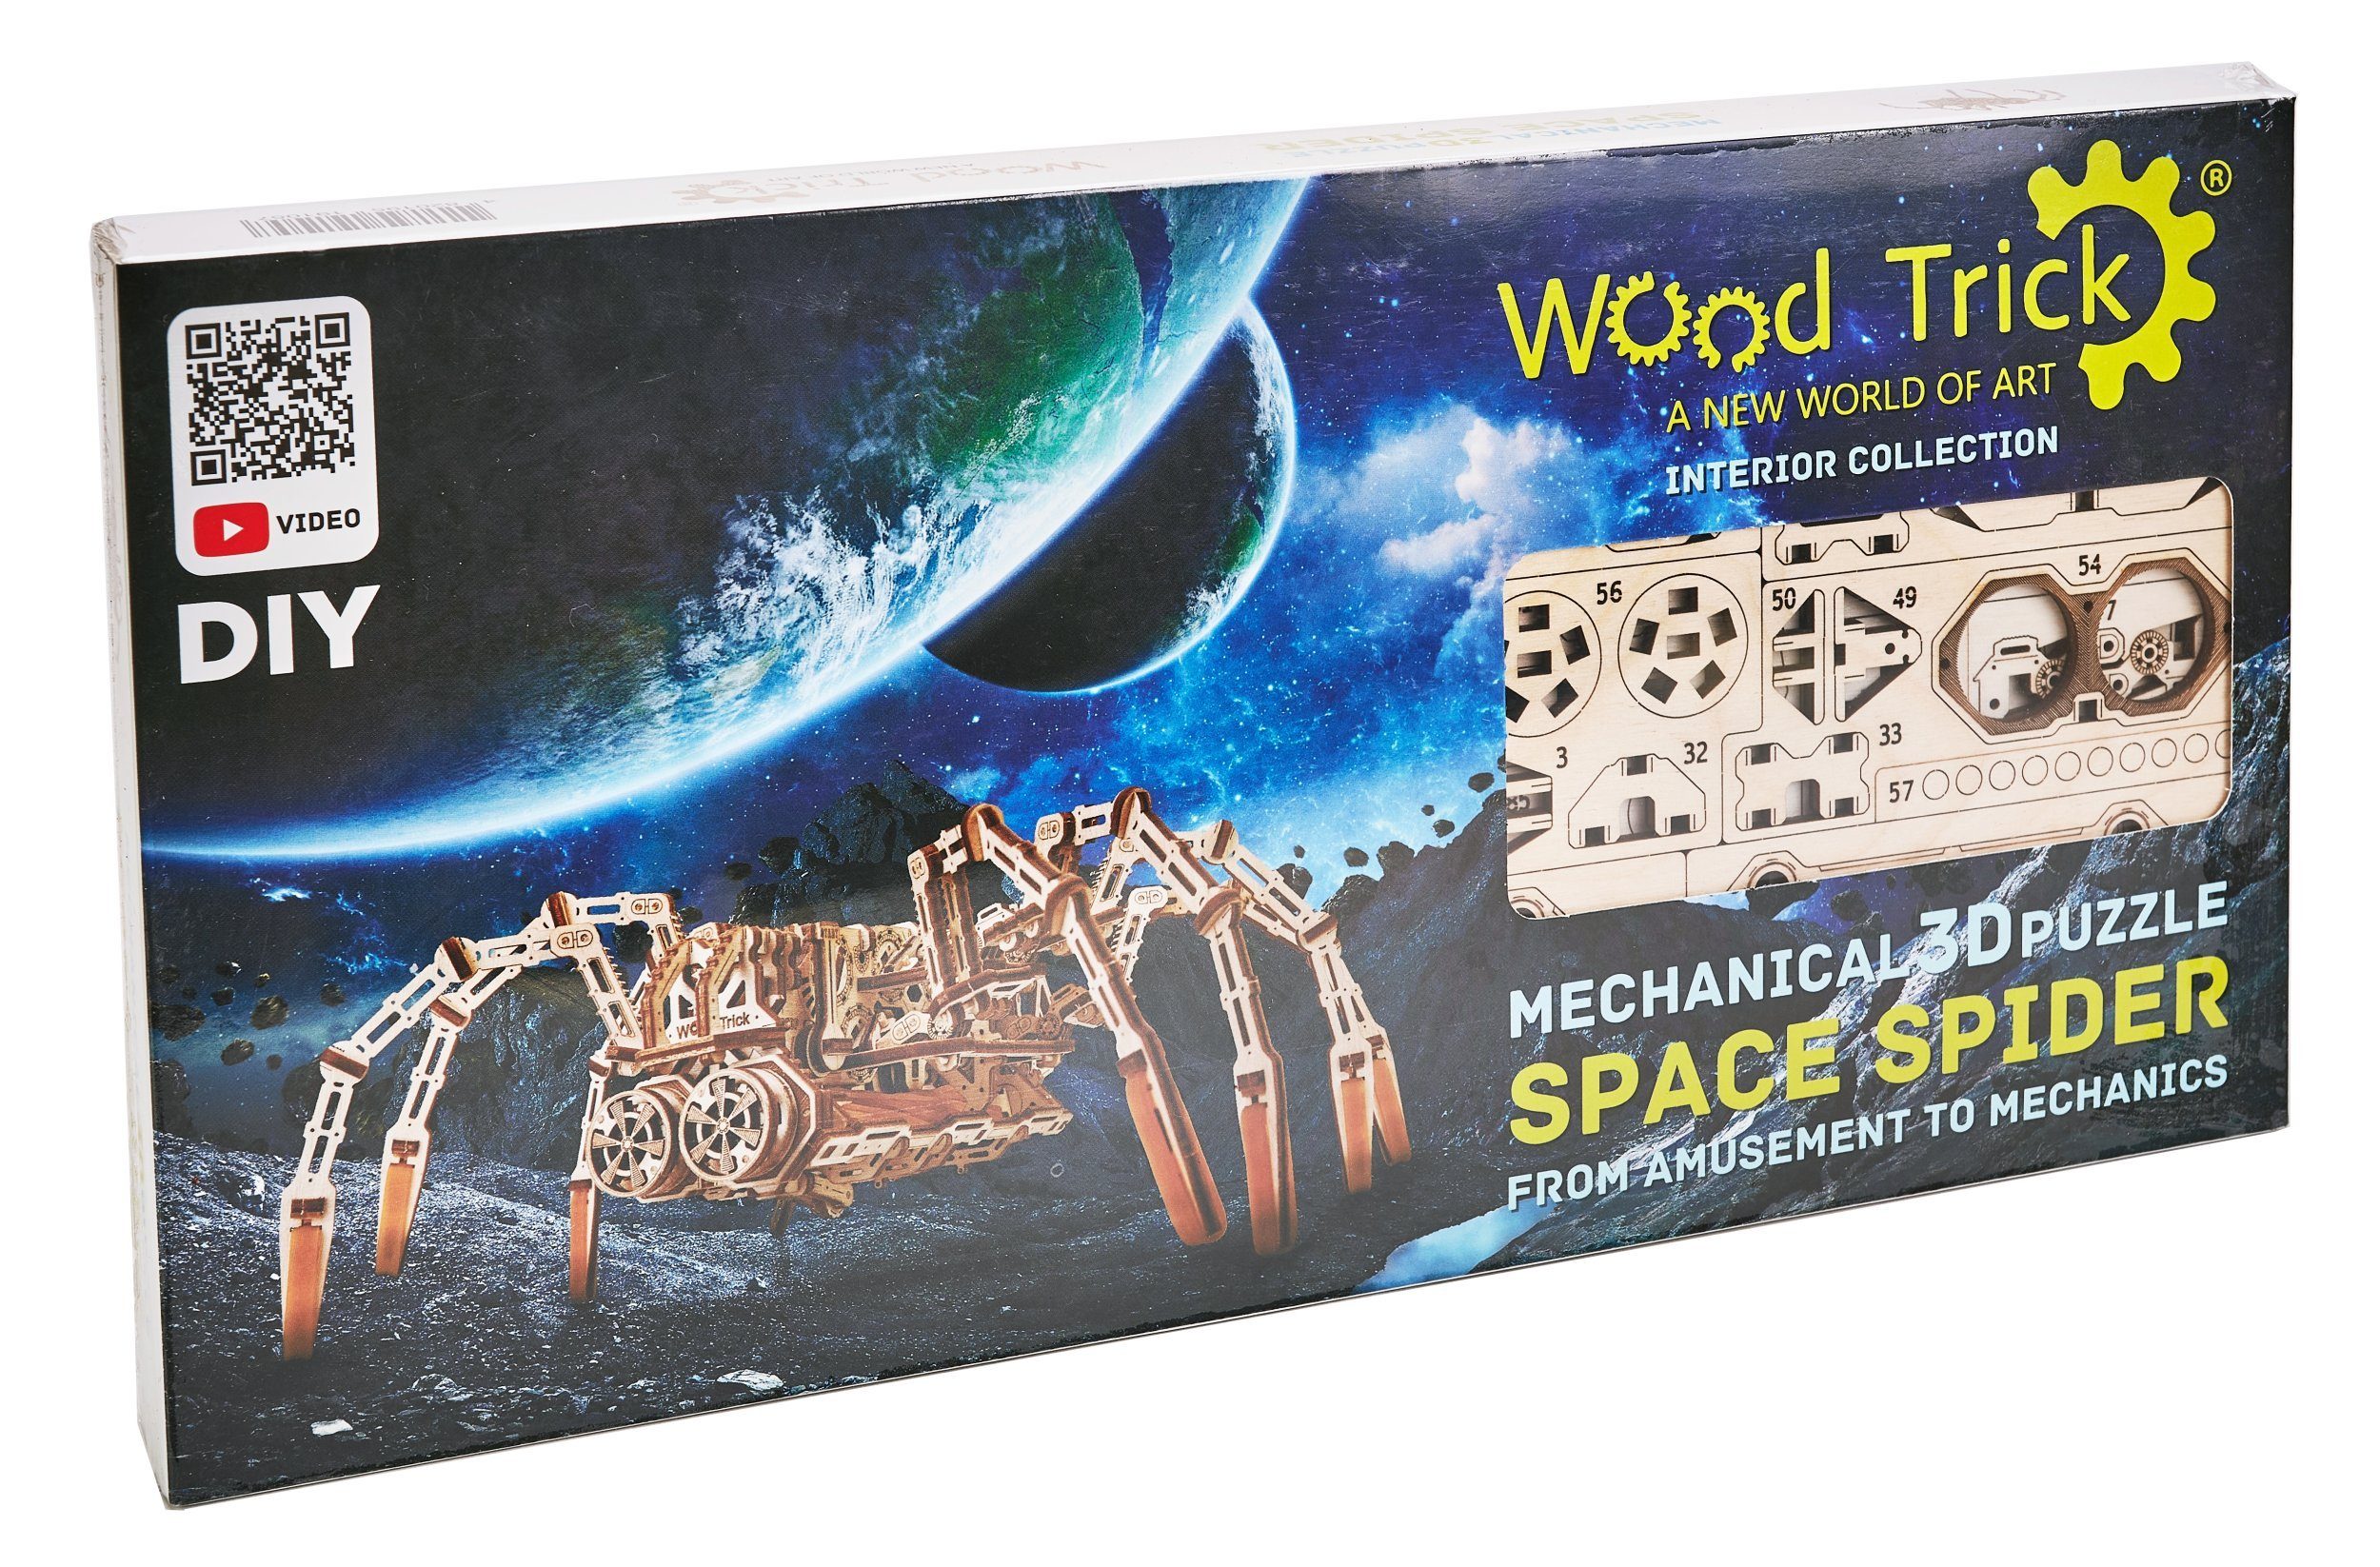 245 WOOD Space Selva Spider, TRICK Technik Puzzleteile WoodTrick 3D-Puzzle Bauteile,